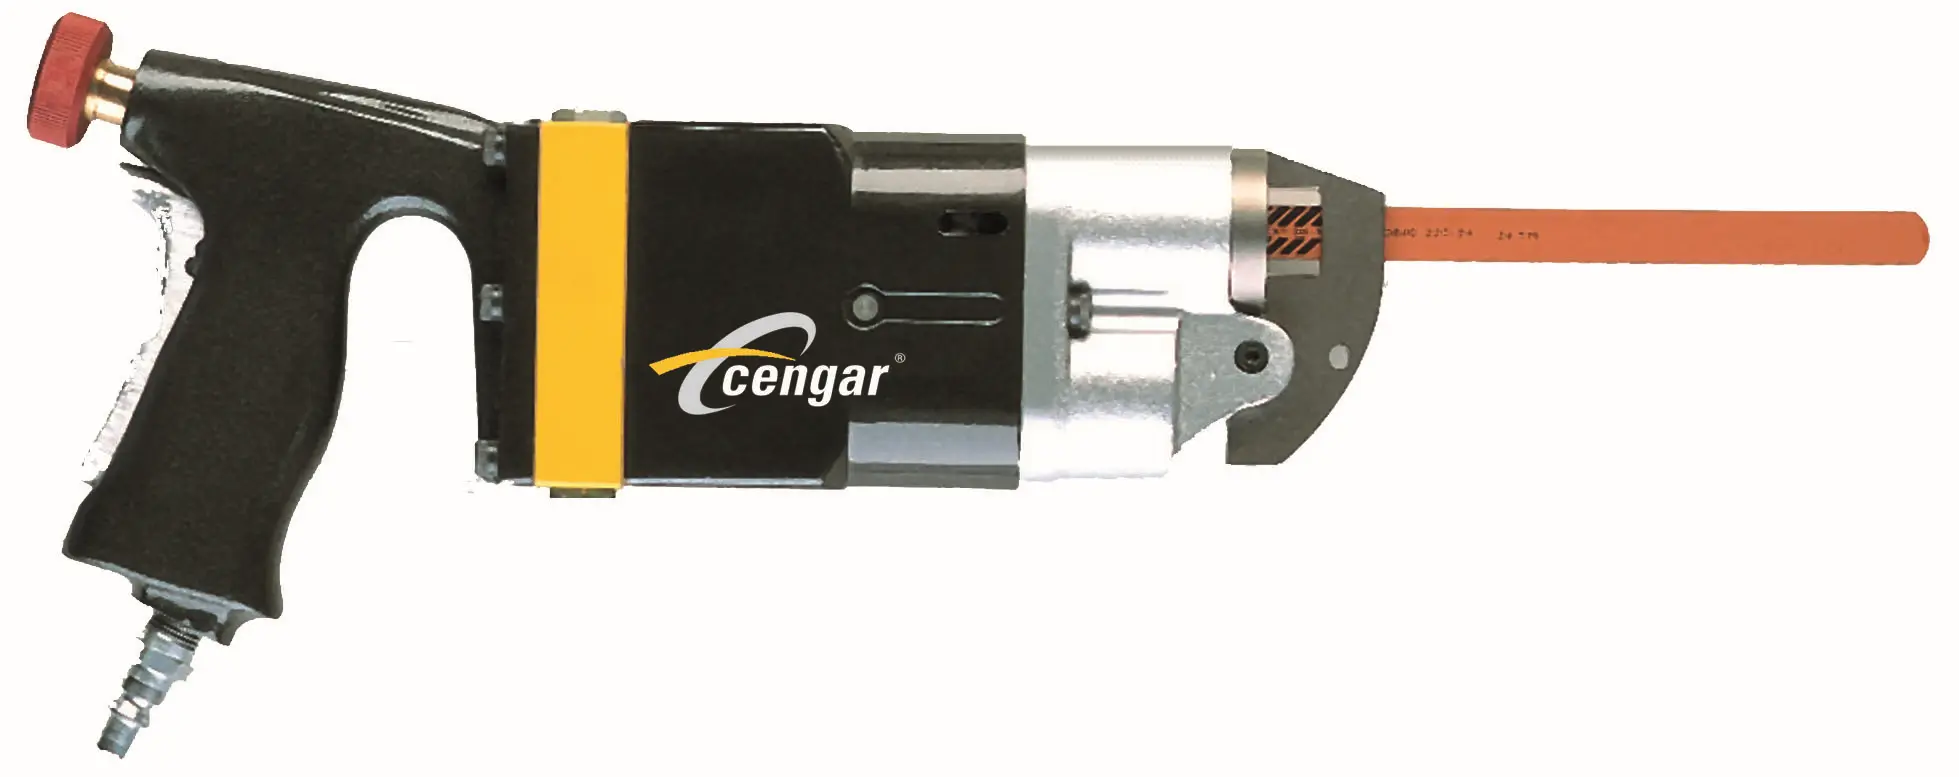 Cengar Pallet Repair Saw PL905